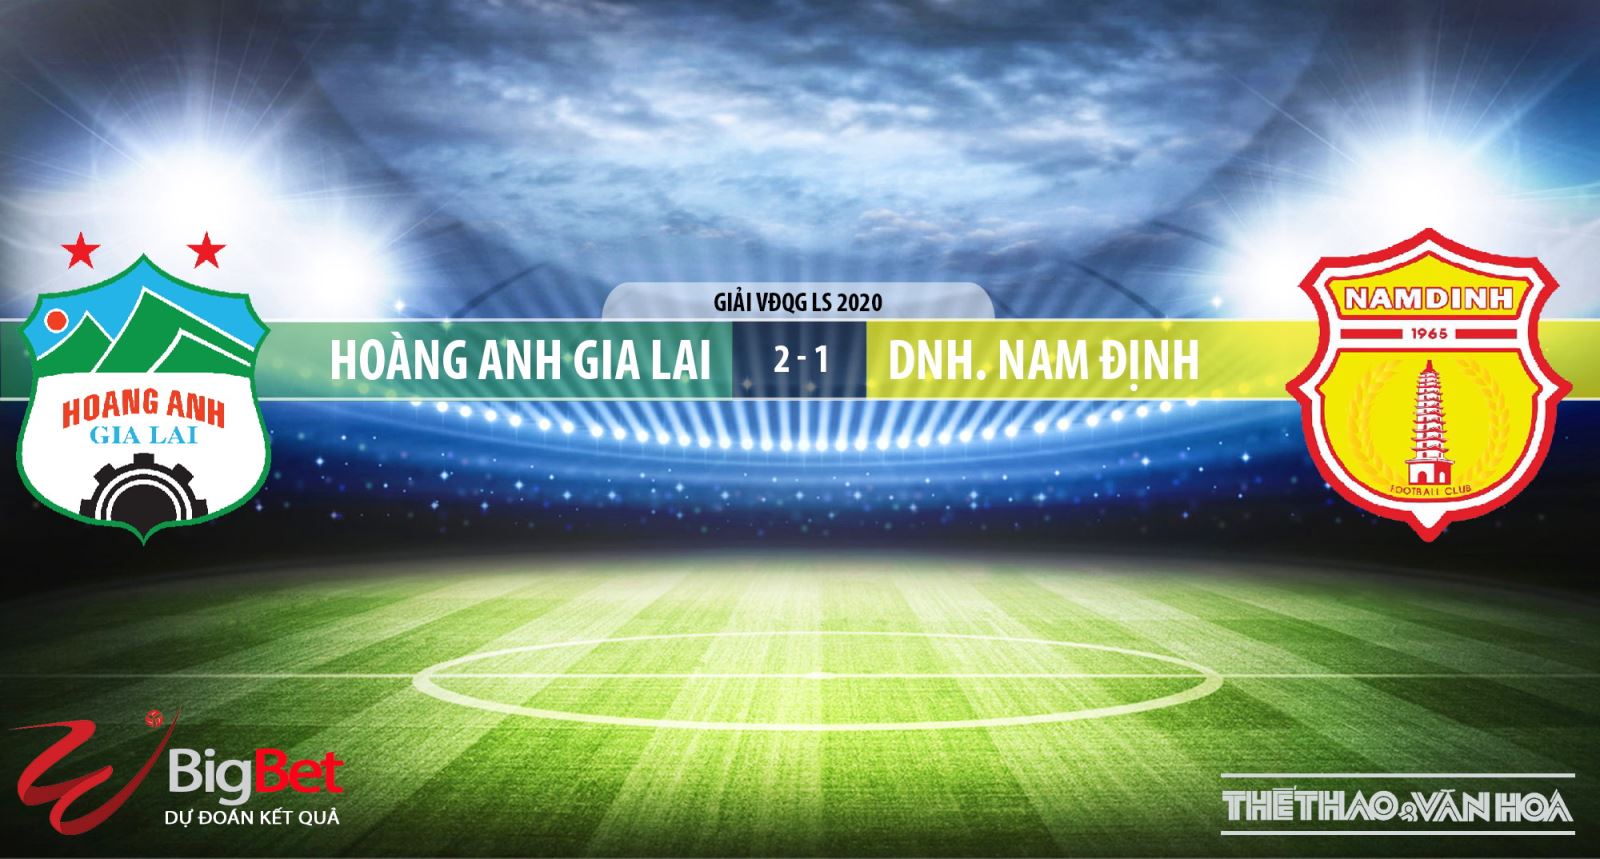 HAGL vs Nam Định, kèo bóng đá, HAGL, Nam Định, bóng đá, bong da, nhận định HAGL vs Nam Định, bóng đá hôm nay, V-League